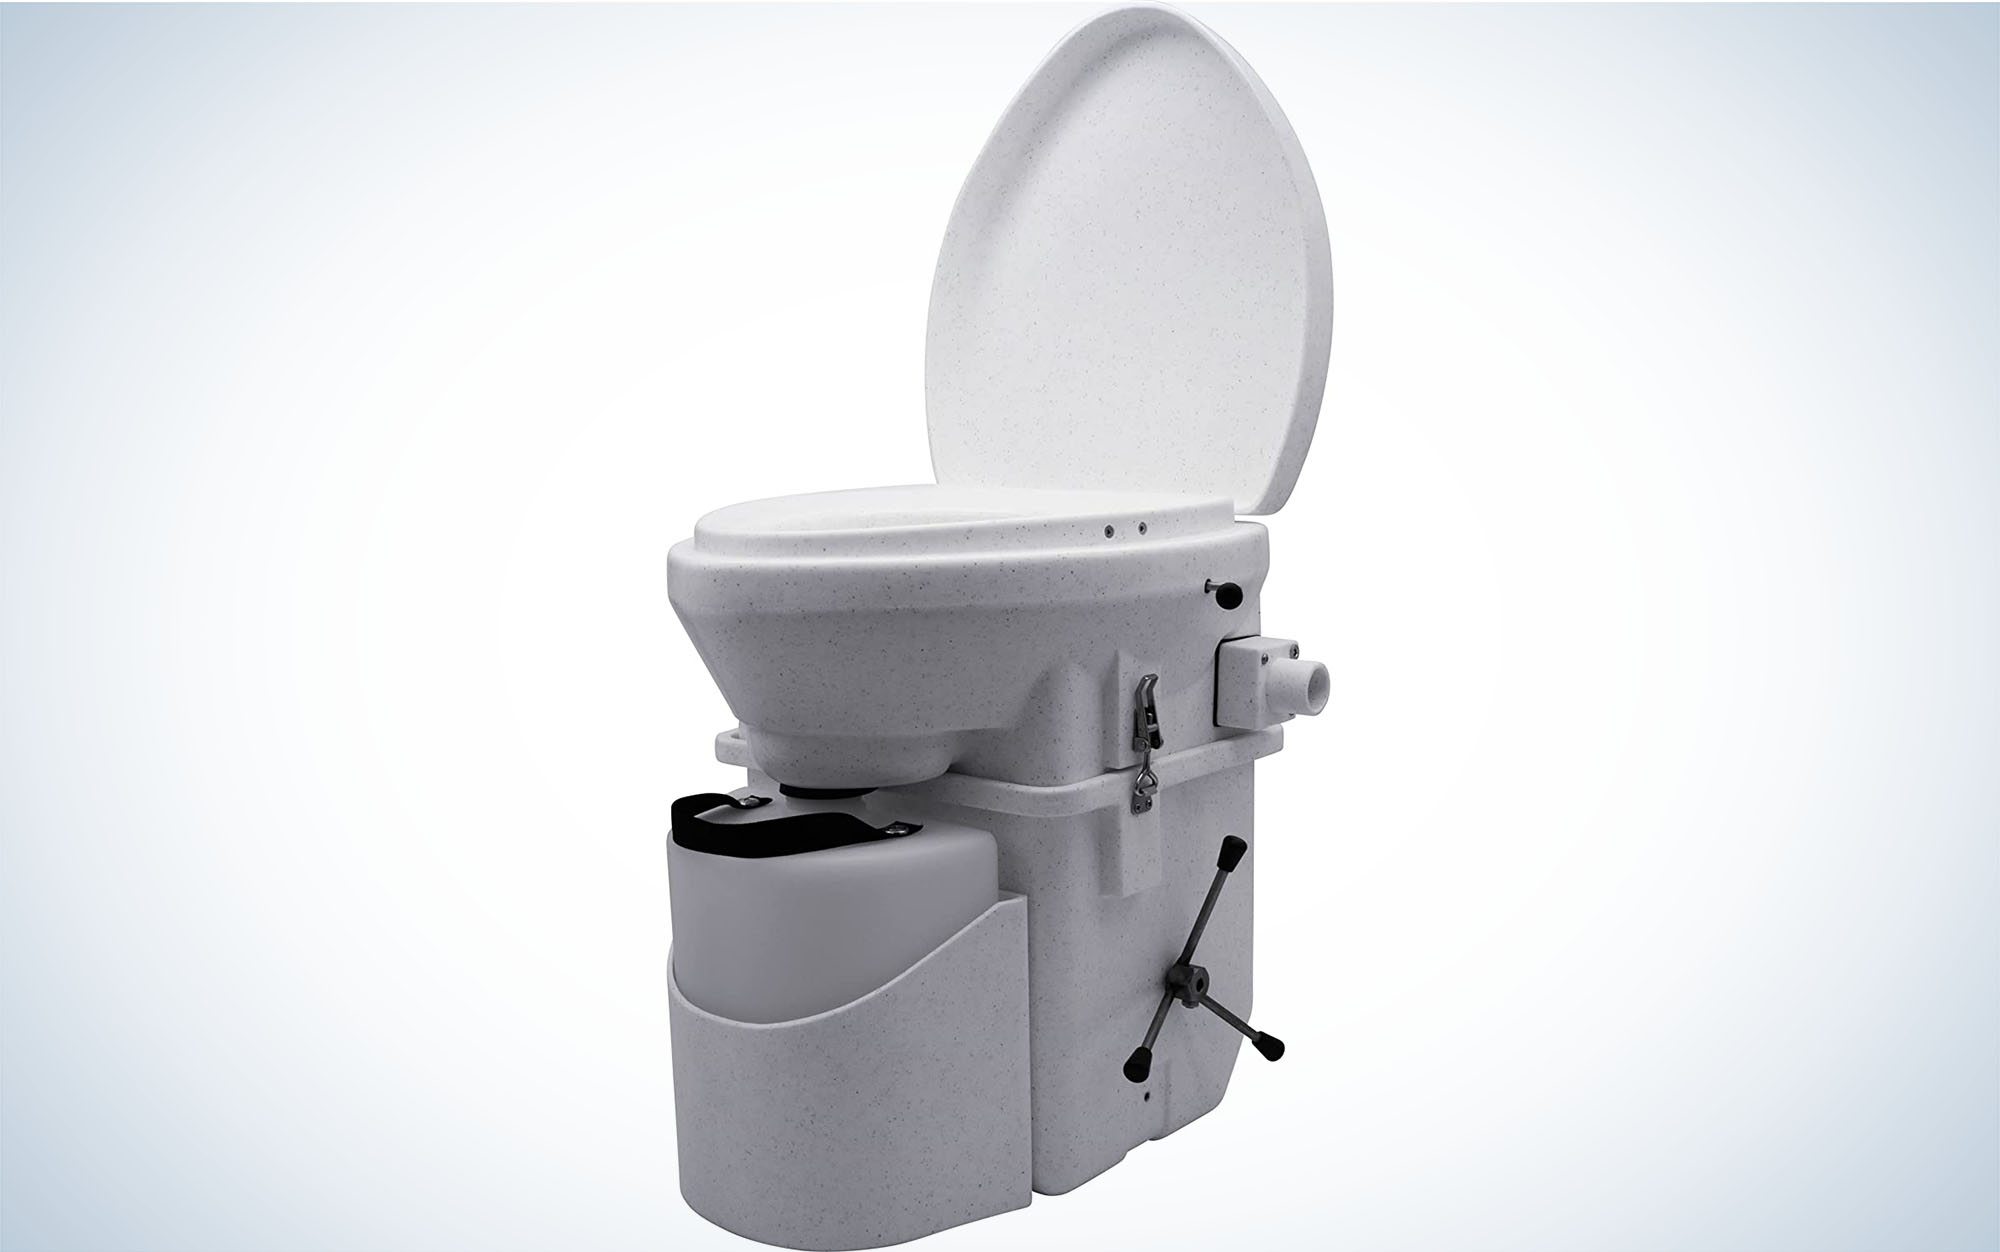 The Natureâs Head Composting Toilet is the best overall.